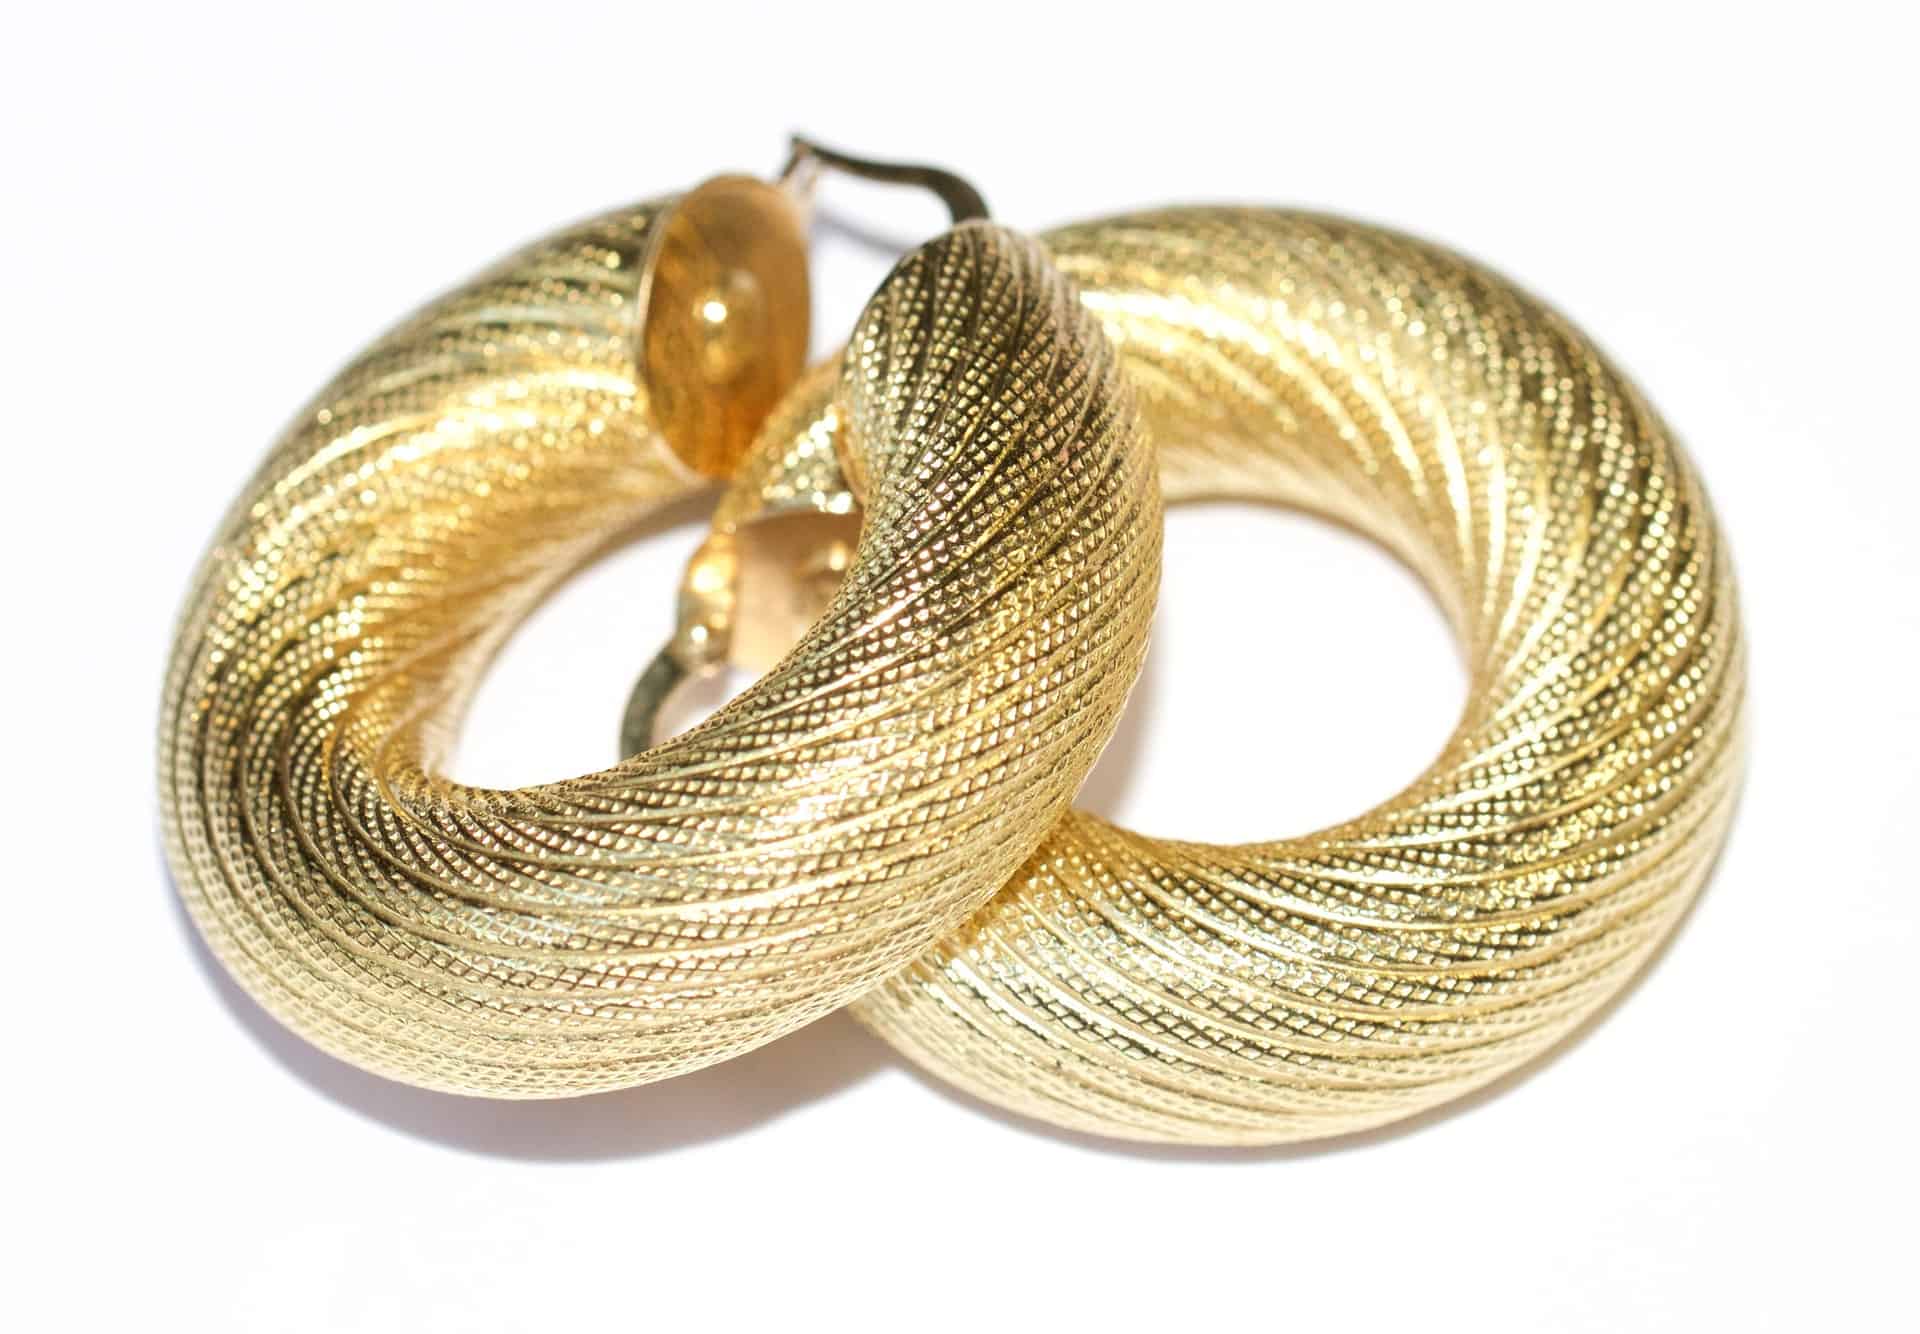 A pair of gold huggies hoop earrings